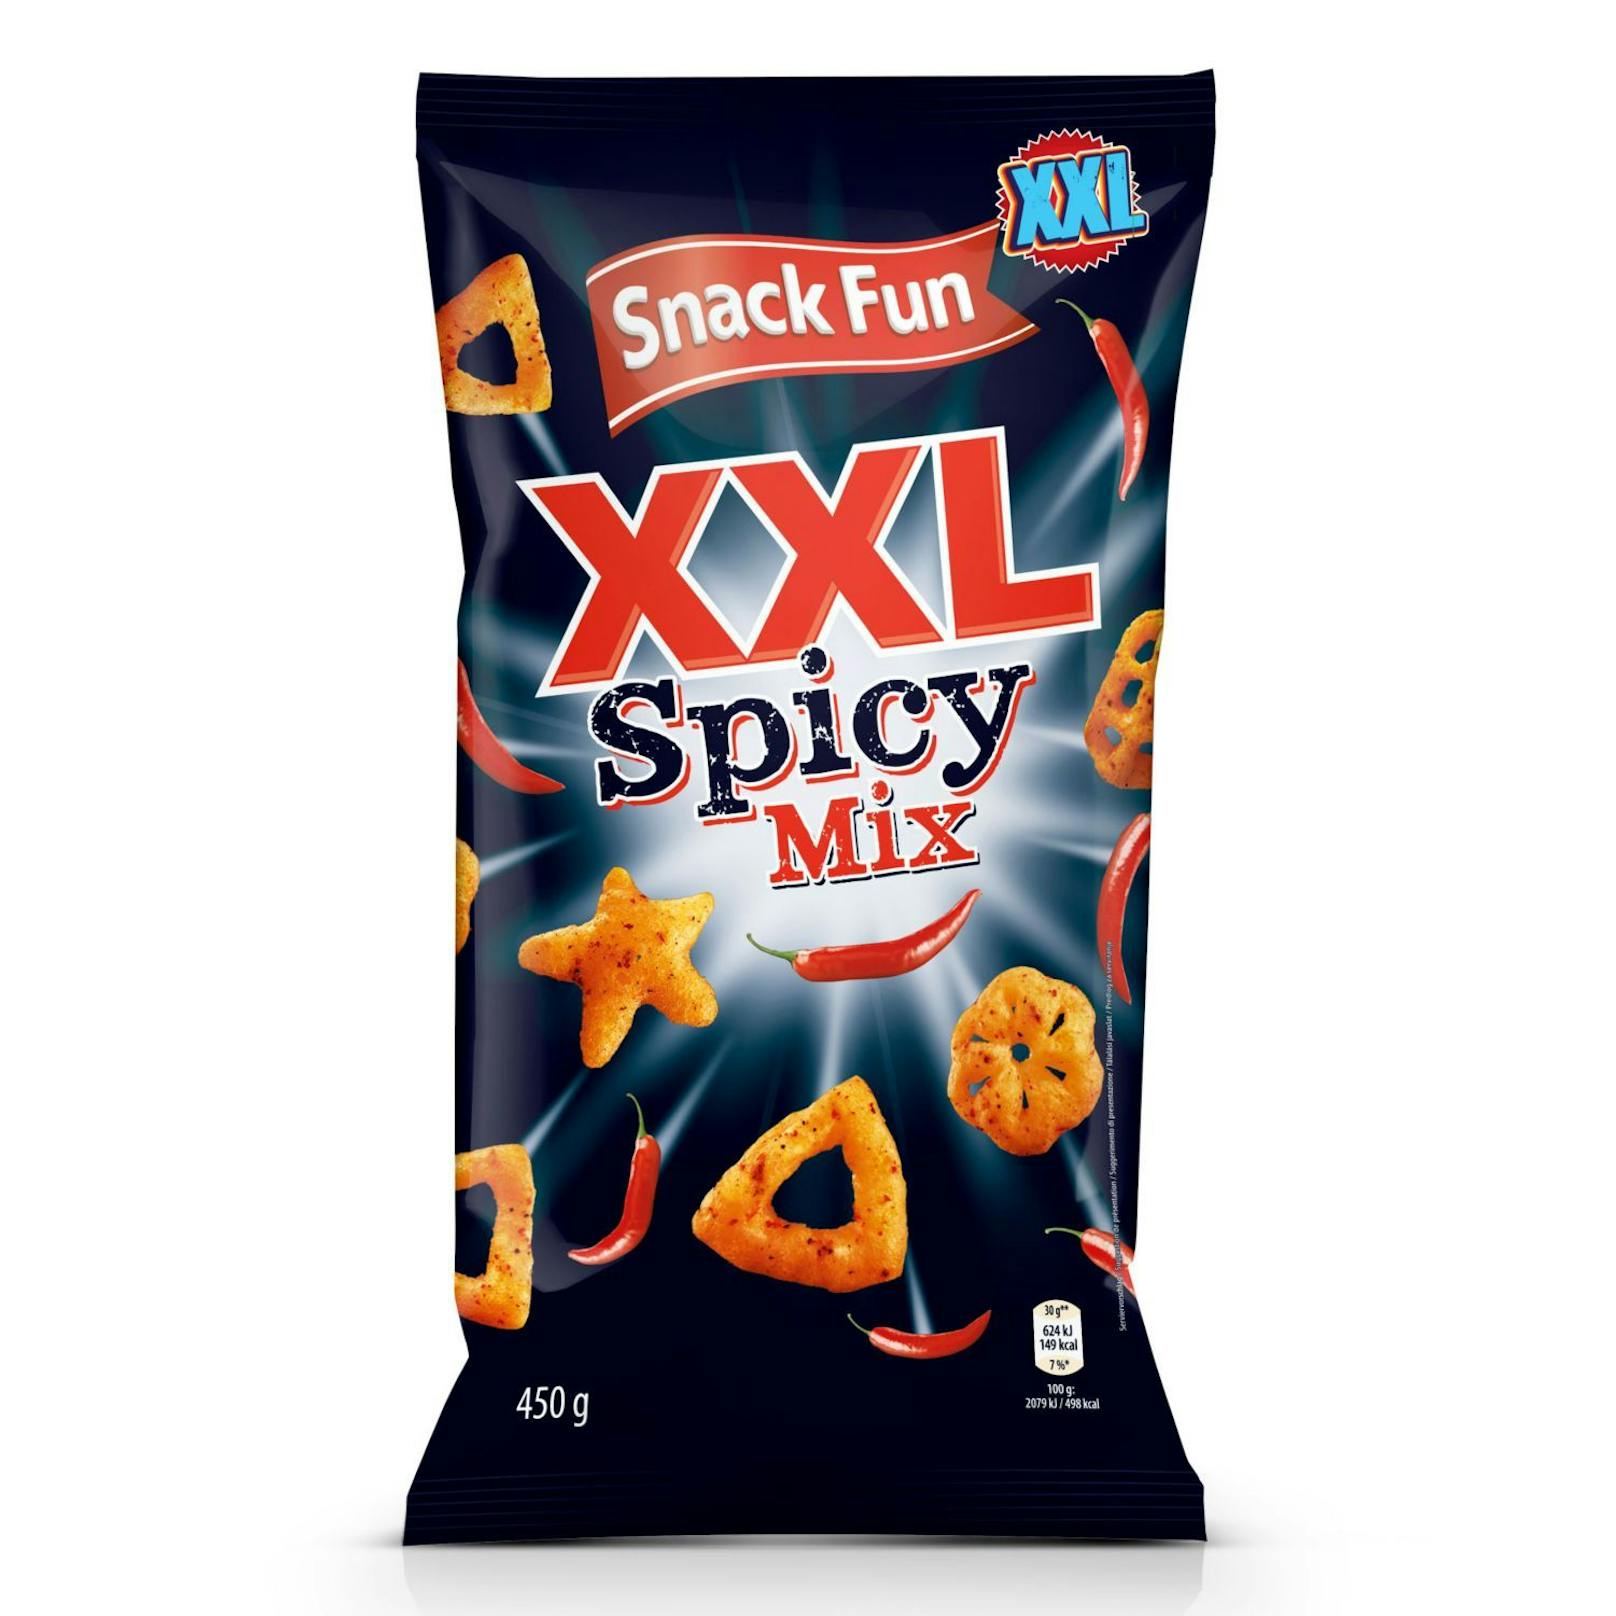 Snack Fun XXL Spicy Mix - hier geht's zum würzigen Genuss: <strong><a target="_blank" href="https://www.hofer.at/de/p.snack-fun-xxl-snacks-spicy-mix.000000000156492003.html">https://www.hofer.at</a></strong>